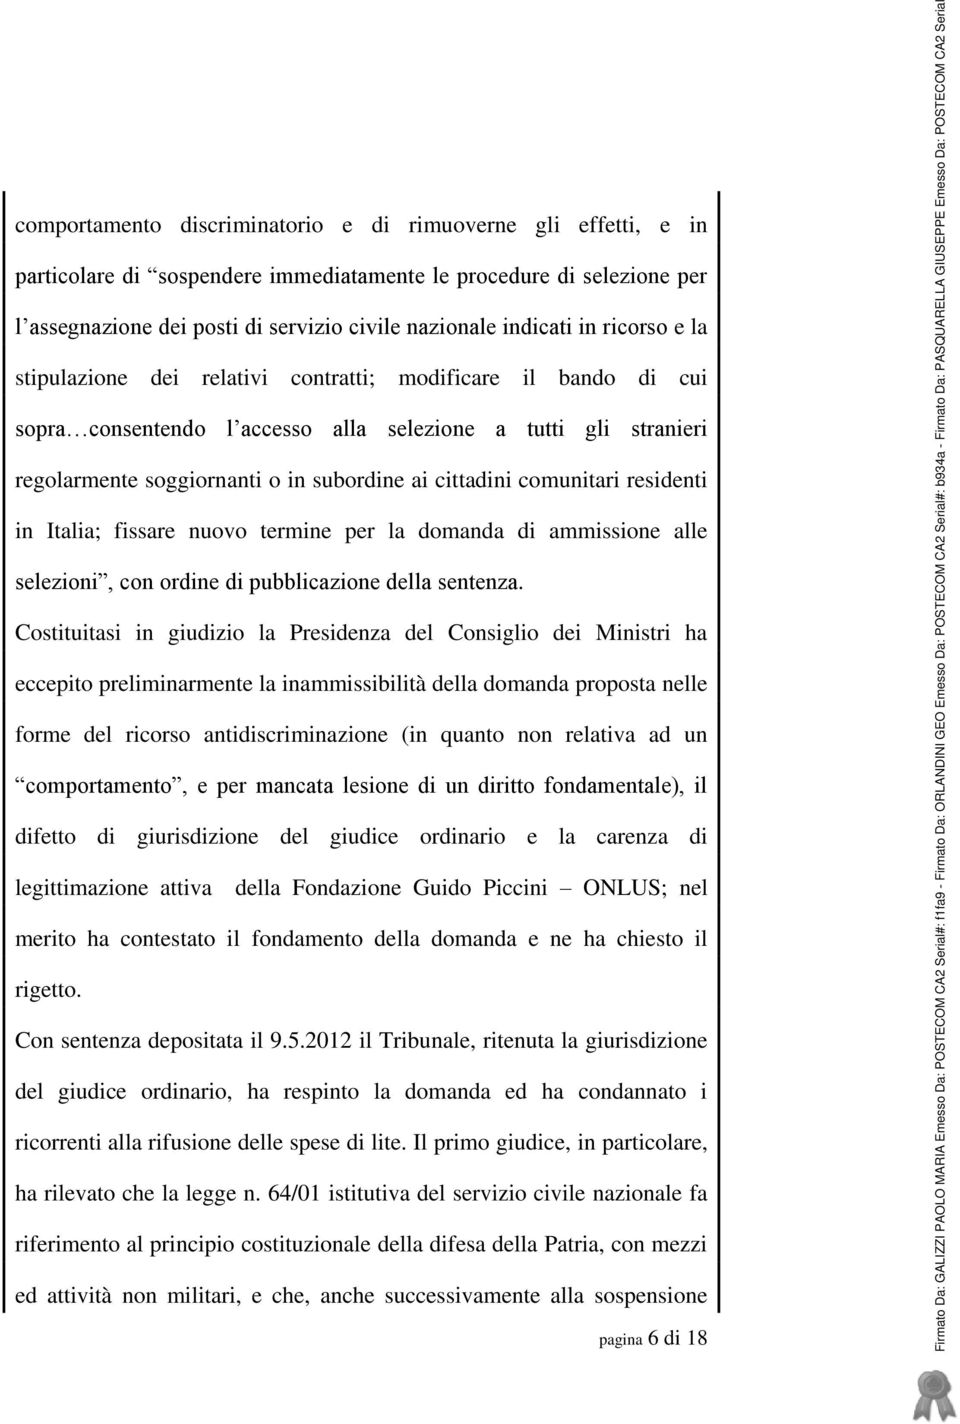 comunitari residenti in Italia; fissare nuovo termine per la domanda di ammissione alle selezioni, con ordine di pubblicazione della sentenza.